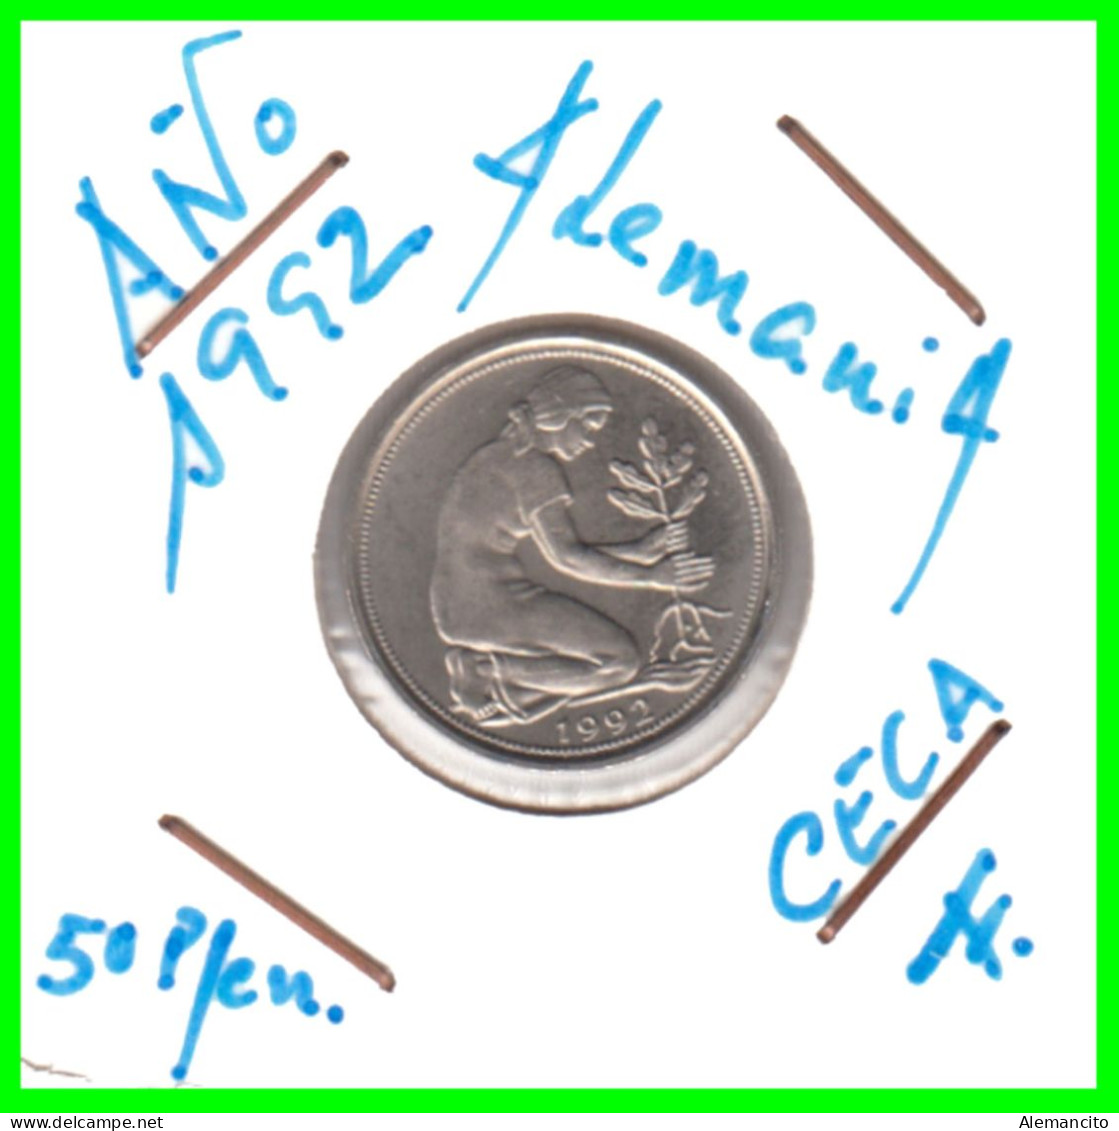 ALEMANIA - DEUTSCHLAND - GERMANY-MONEDA DE LA REPUBLICA FEDERAL DE ALEMIANIA DE 50 Pfn .DEL AÑO 1992 CECA - F -STUTTGART - 50 Pfennig